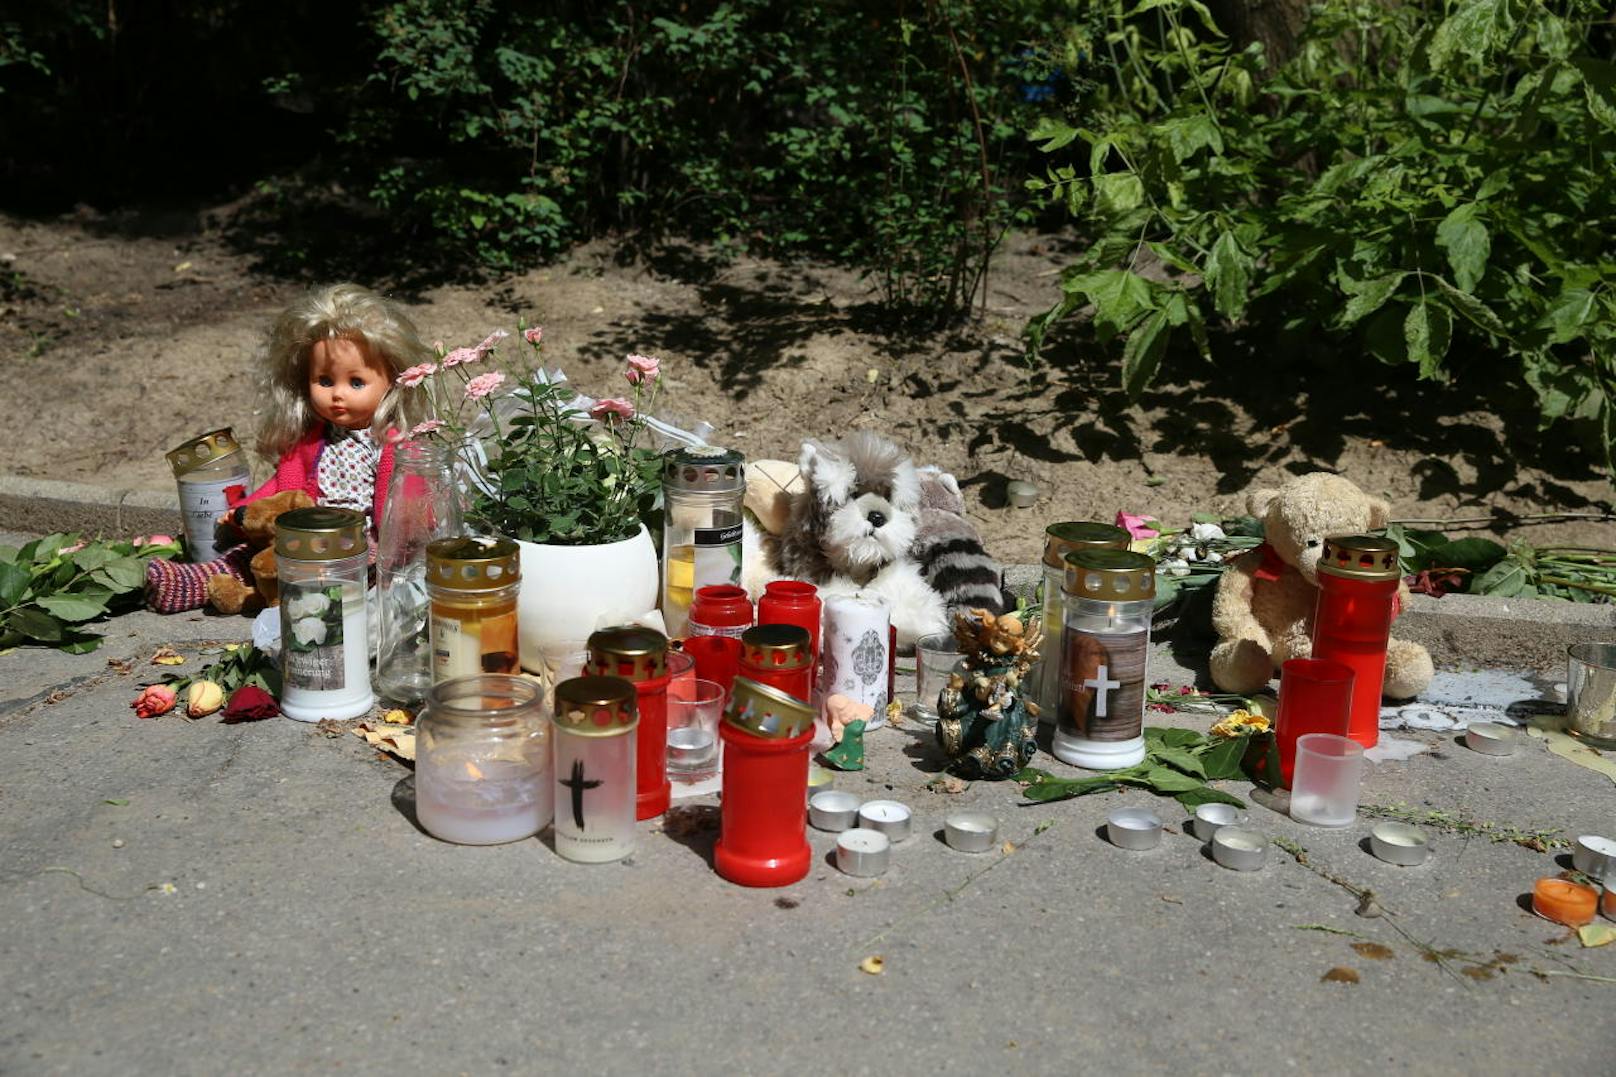 Im Innenhof legen immer mehr Menschen Stofftiere, Puppen und Blumen im Andenken an das ermordete Mädchen ab. Auch Kerzen flackern einsam in Wind.